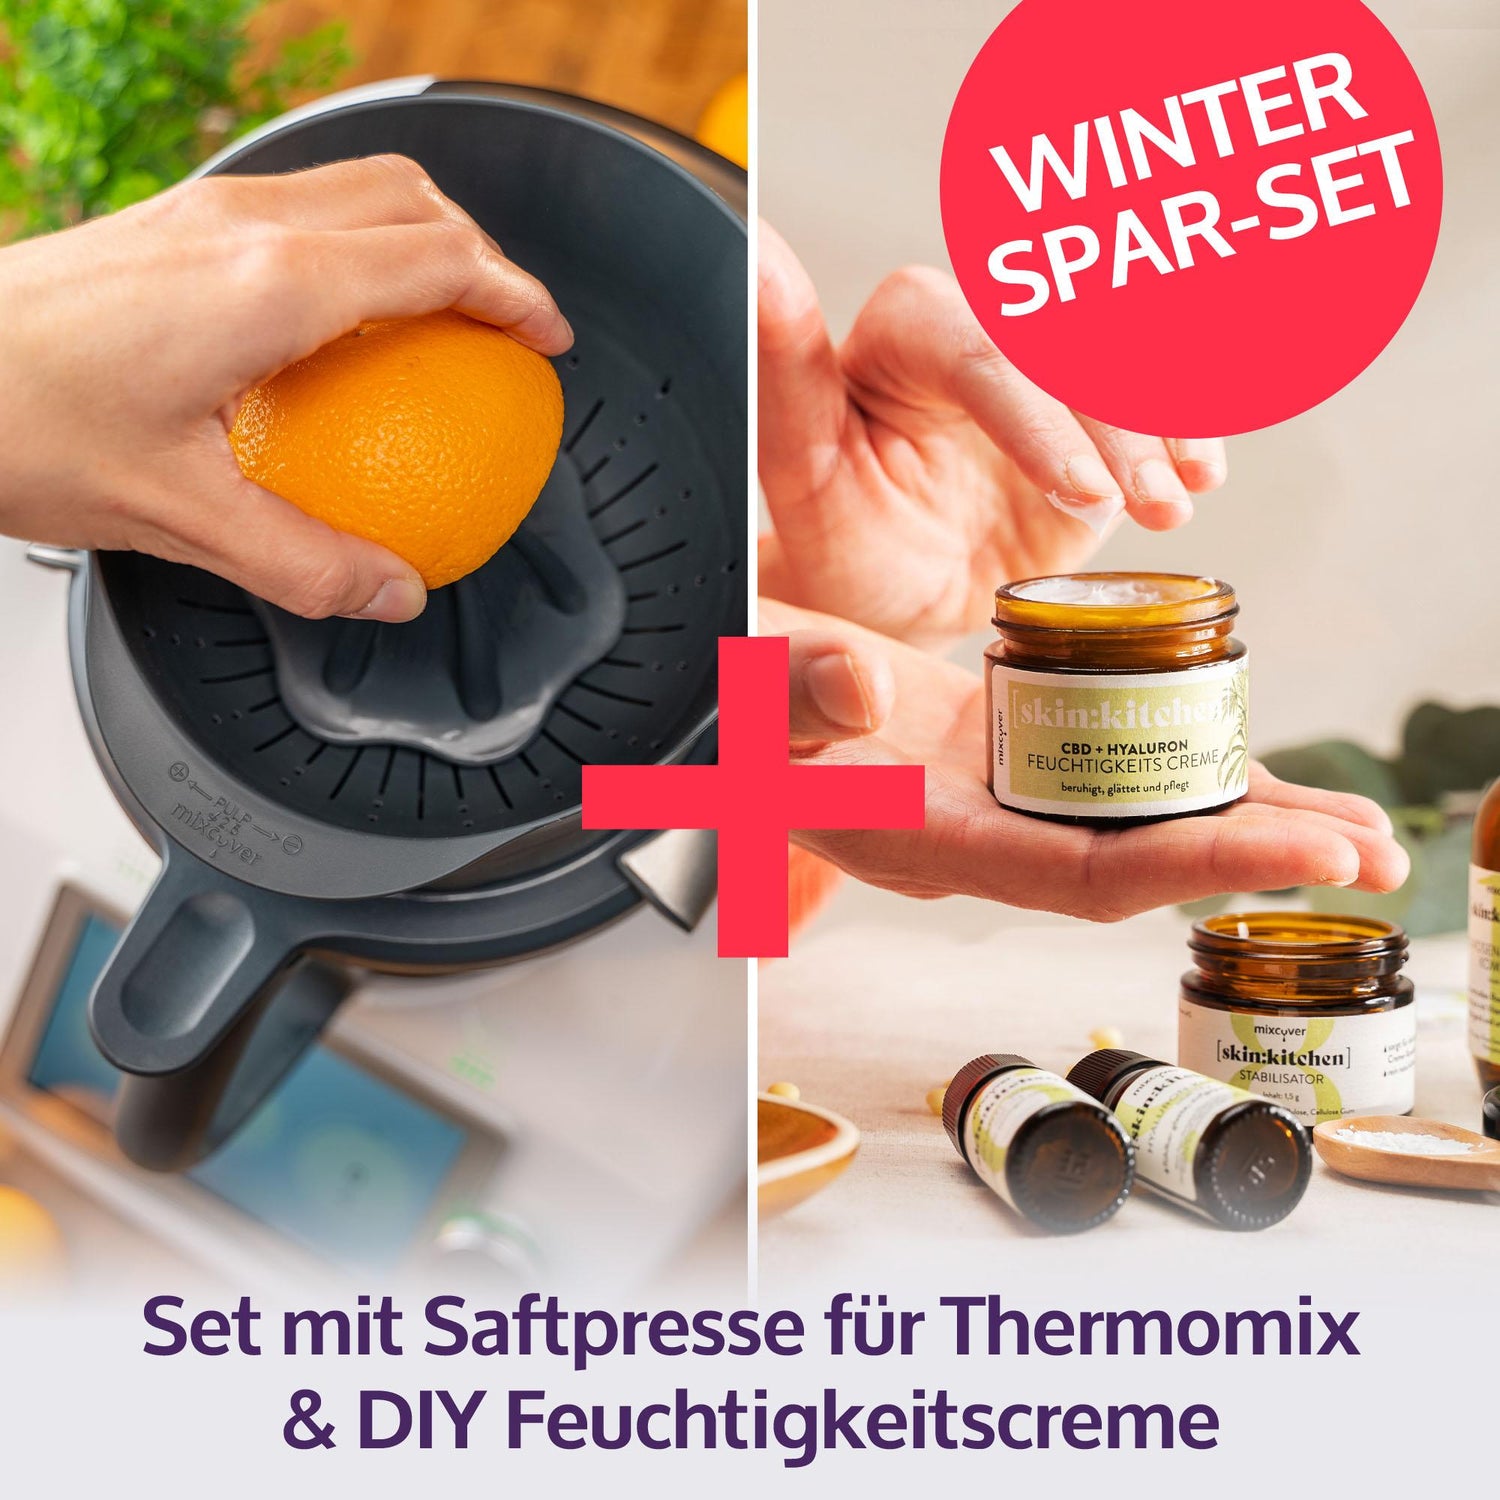 mixcover Saftpresse Entsafter Orangenpresse + DIY Naturkosmetik Set  Gesichtscreme kompatibel mit Vorwerk Thermomix TM6 und TM5, Geschenkidee,  Thermomix Zubehör Set - Mixcover